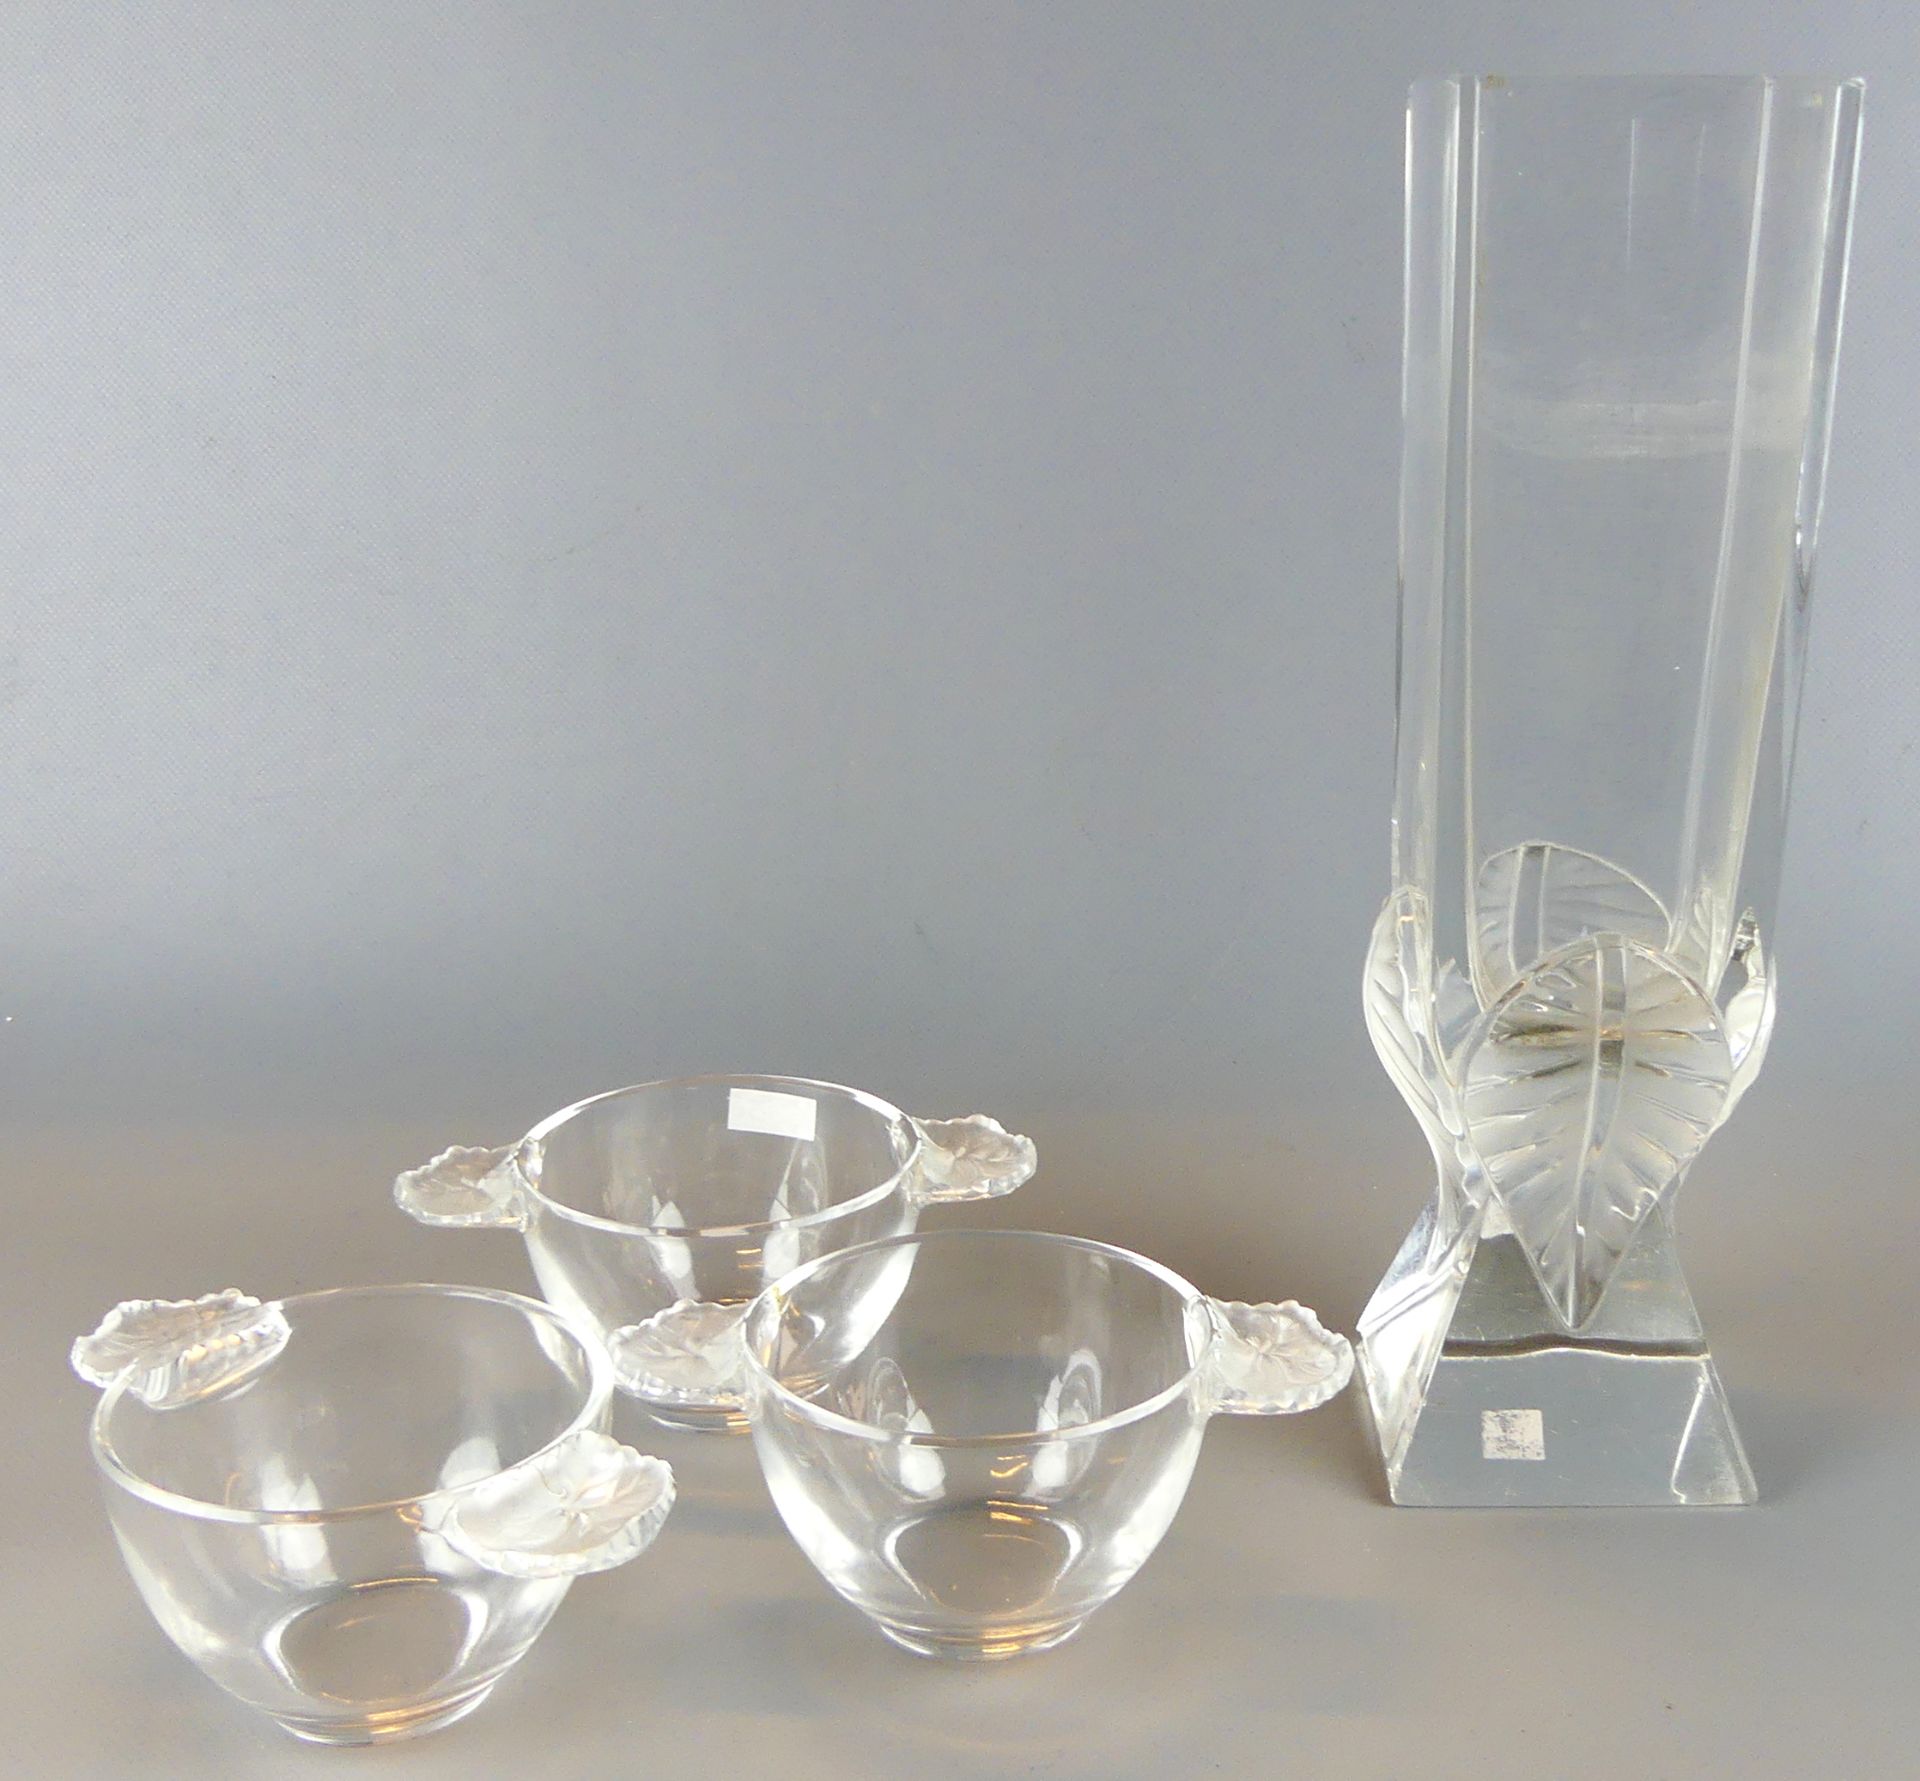 Konvolut Lalique, Vase und 3 kleine Kompottschalen, France, Blattdekor